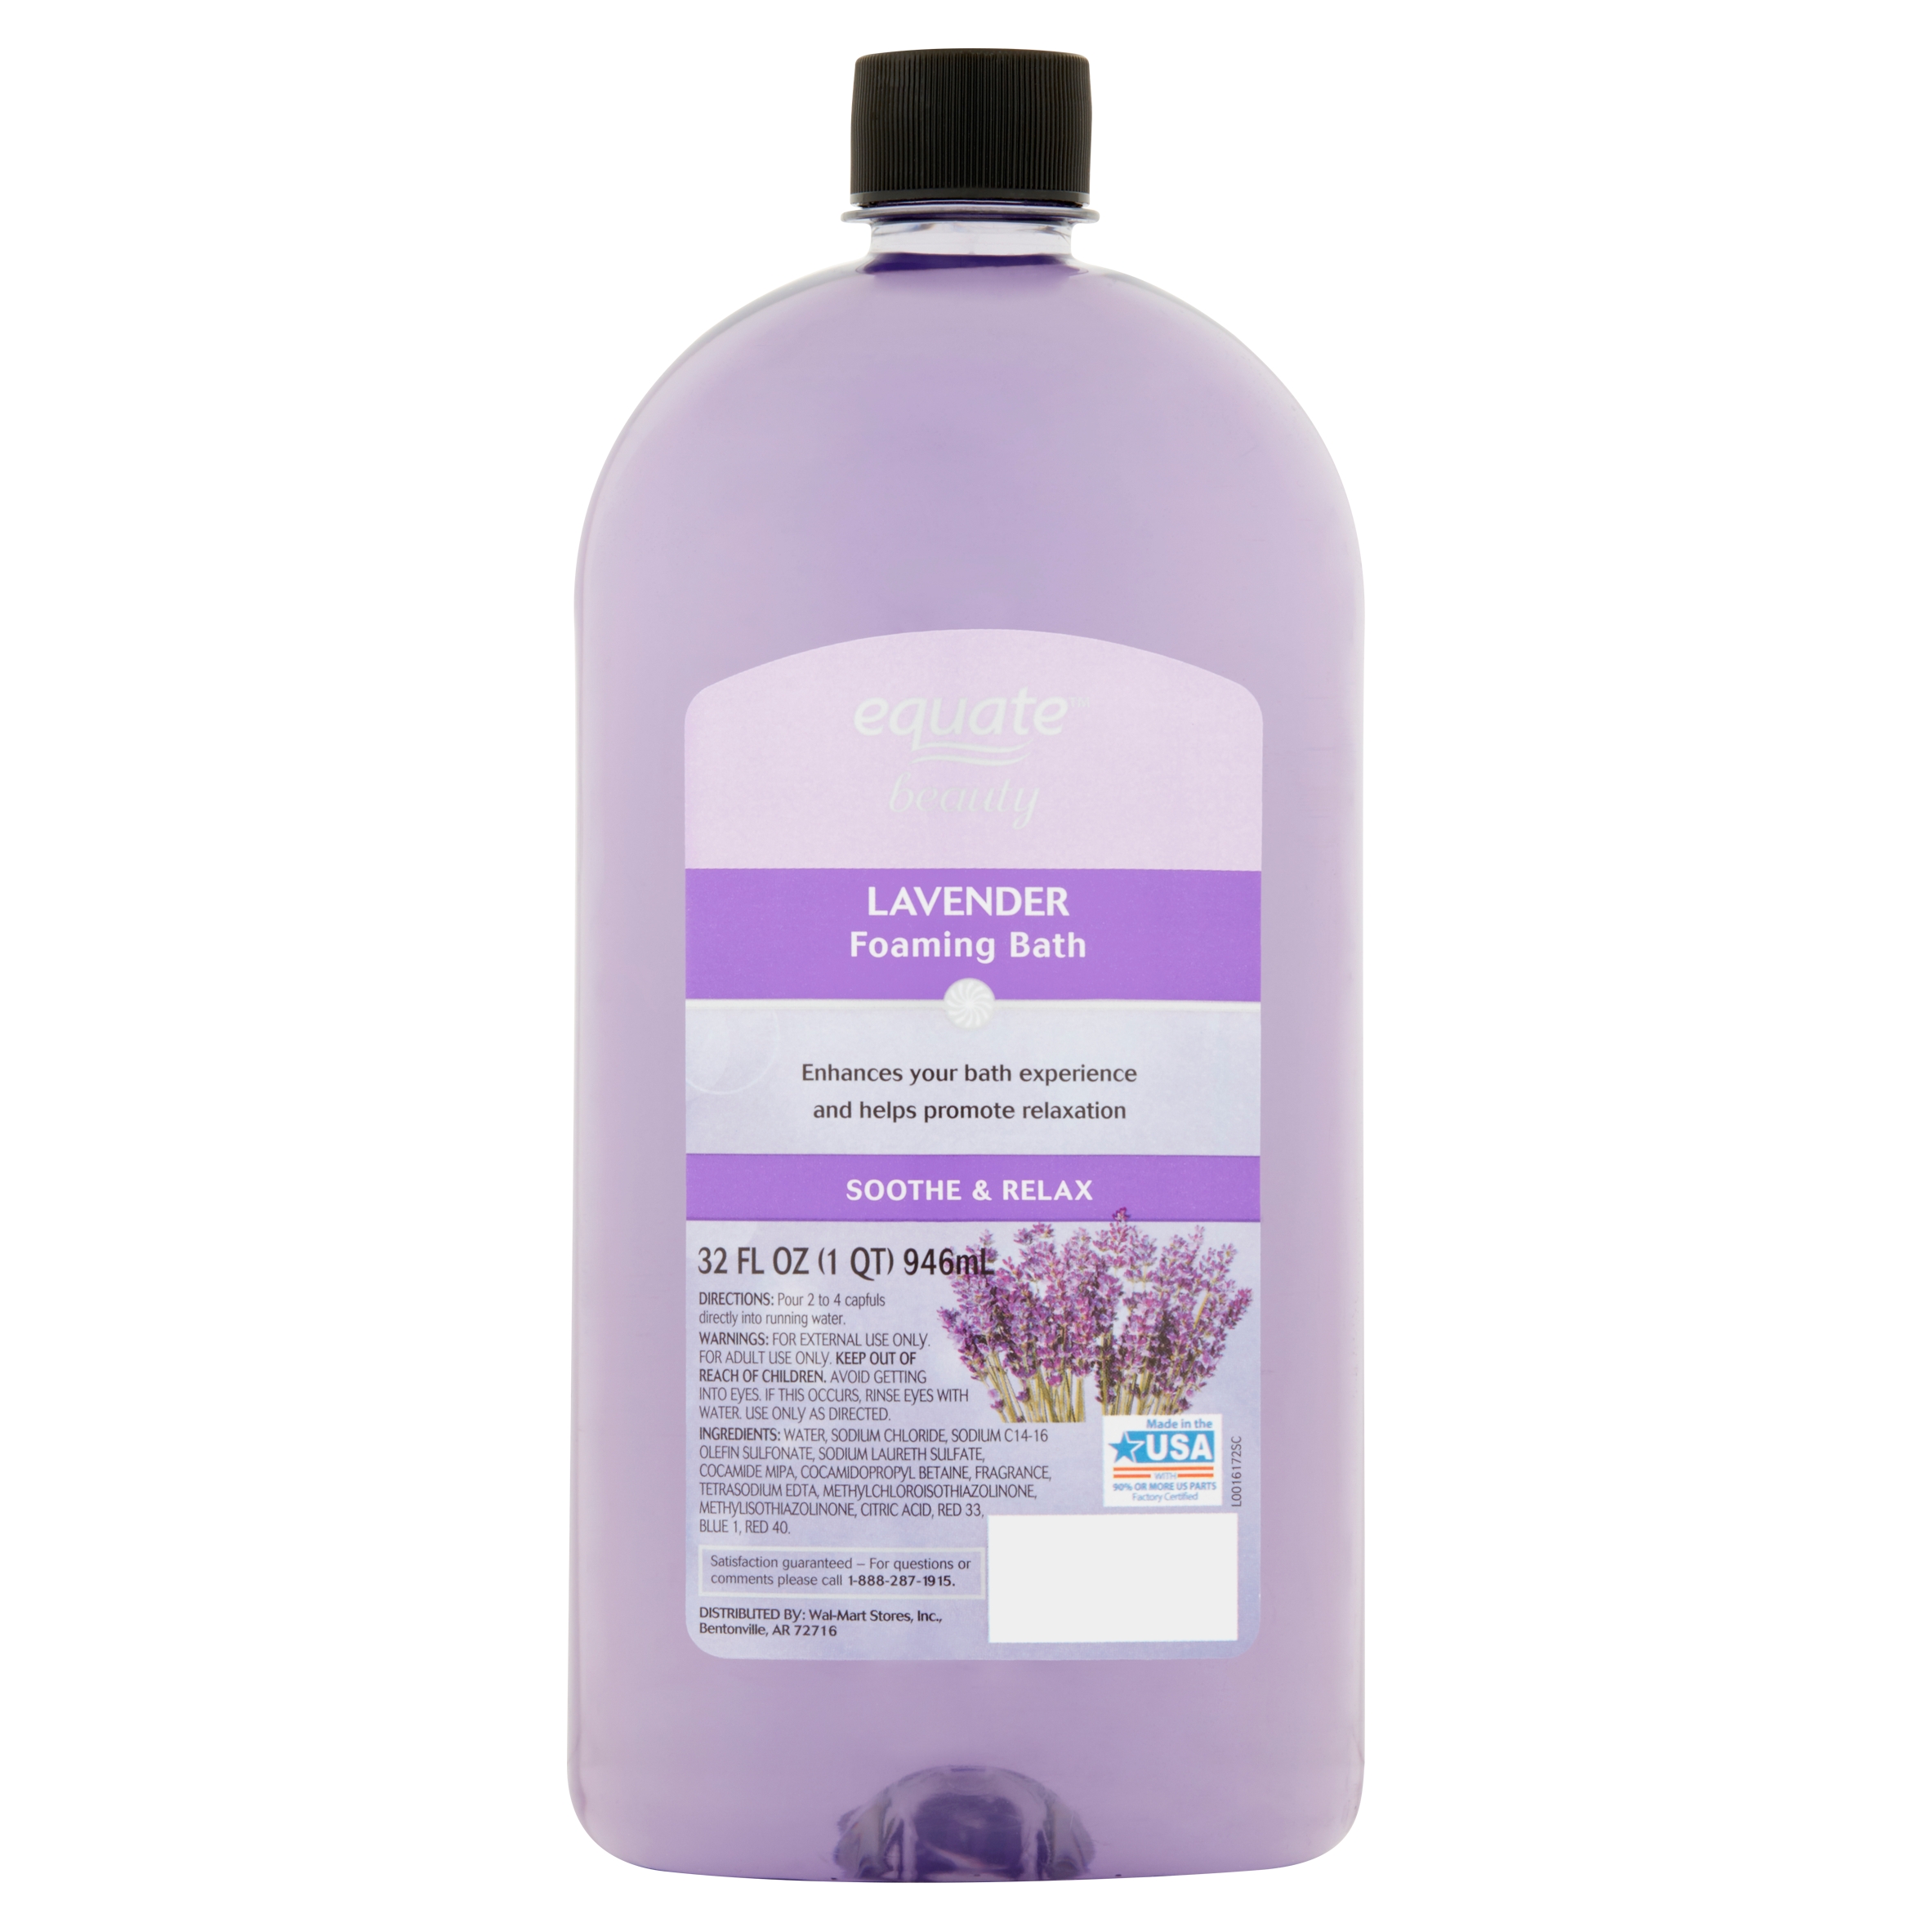 Equate Bubble Bath Lavender - 64 fl oz